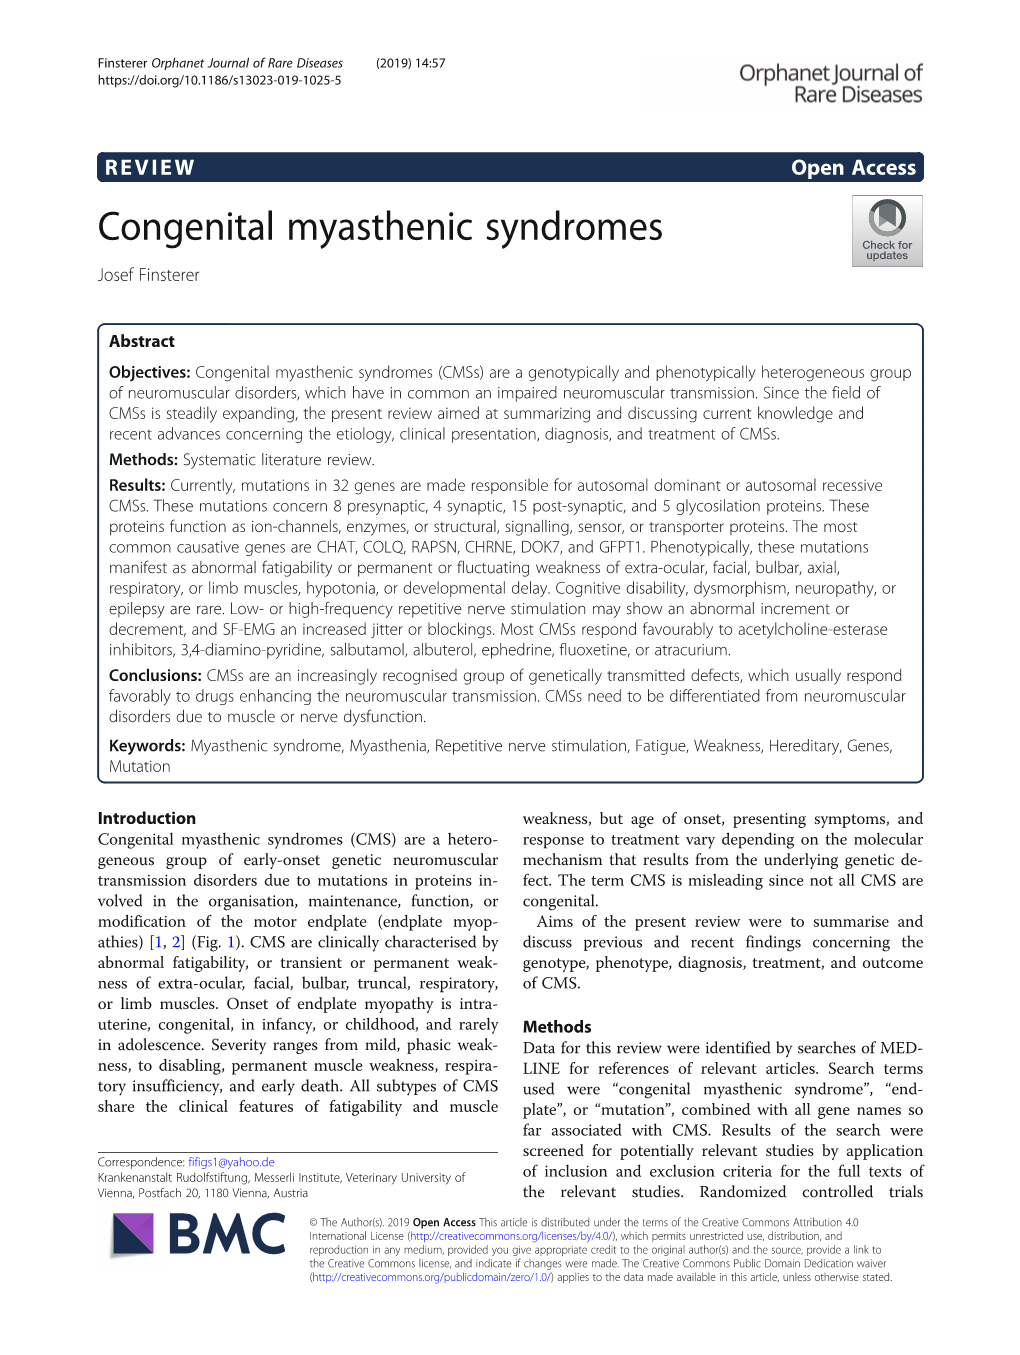 Congenital Myasthenic Syndromes Josef Finsterer